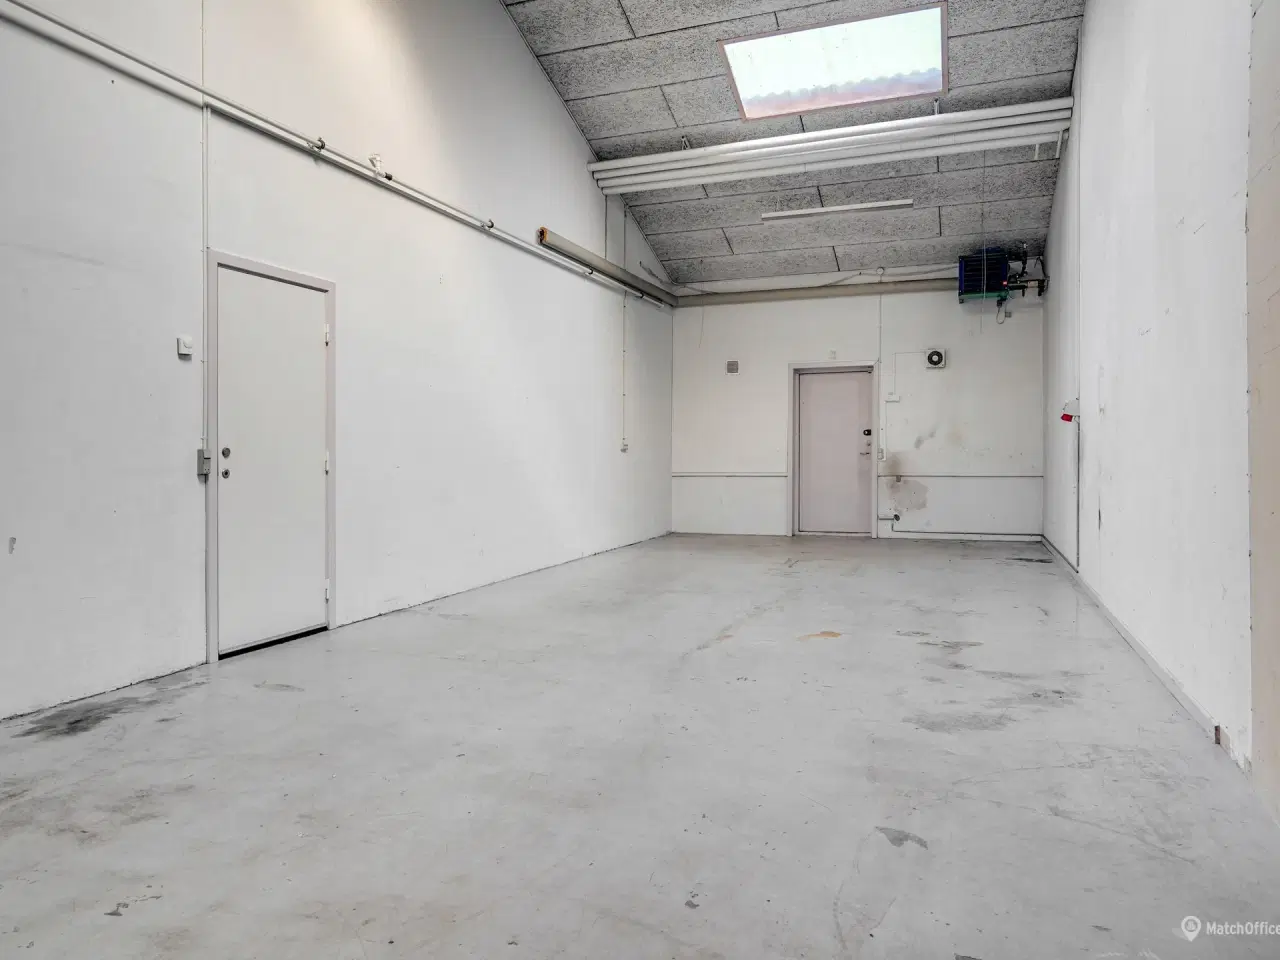 Billede 6 - 332 m² lager/kontor i større erhvervspark